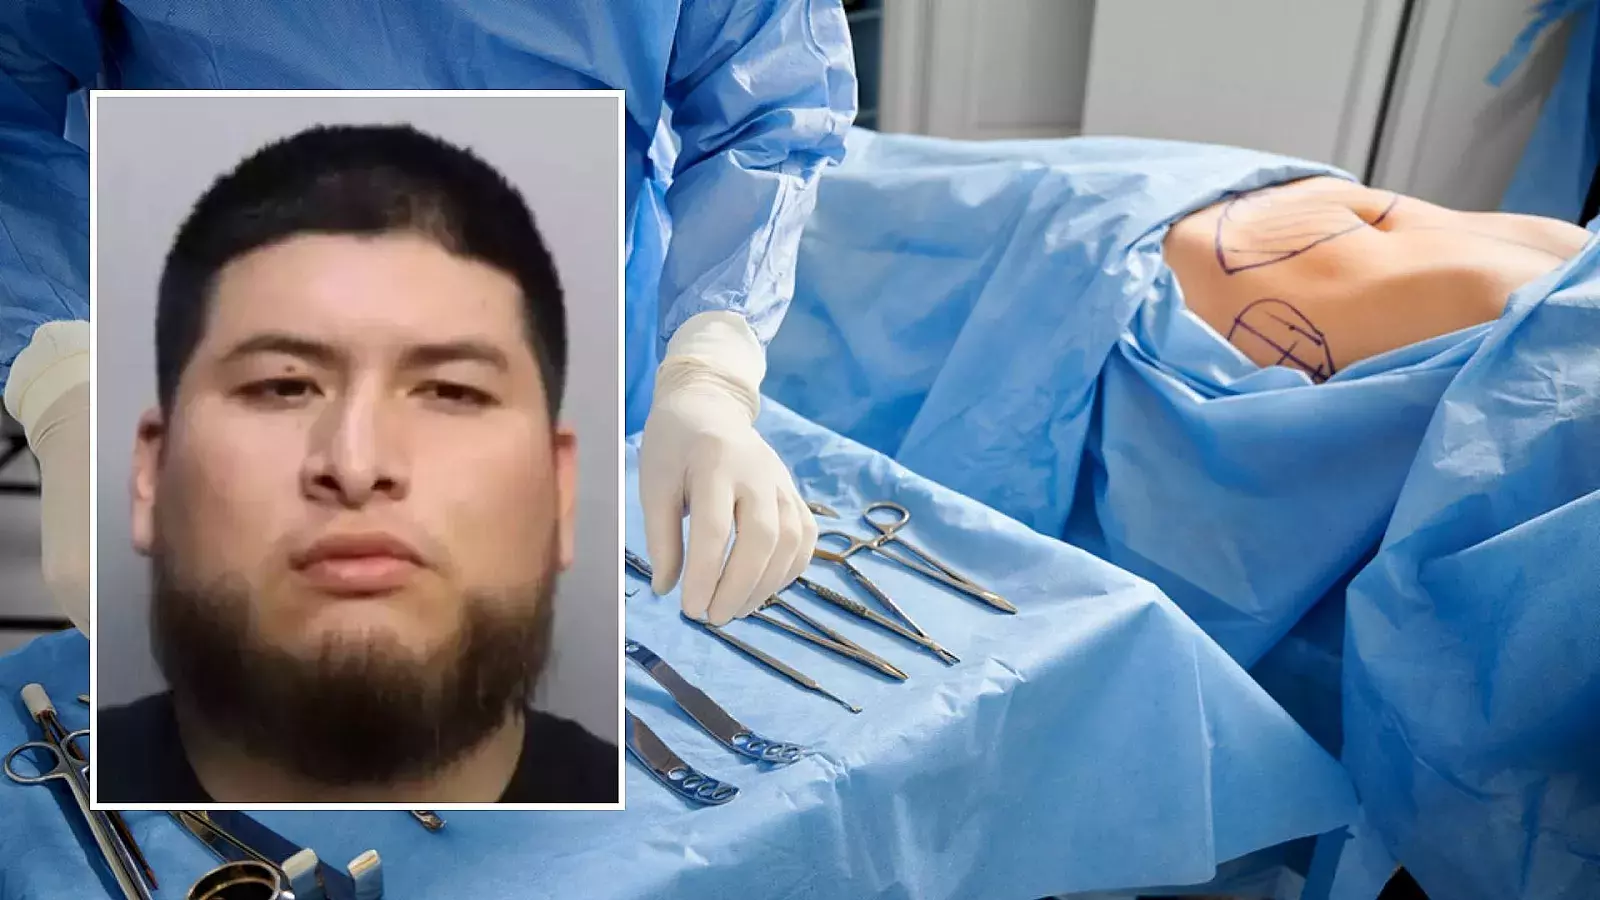 Hombre acusado de voyerismo y agresión física contra paciente sedada tras cirugía estética en Florida